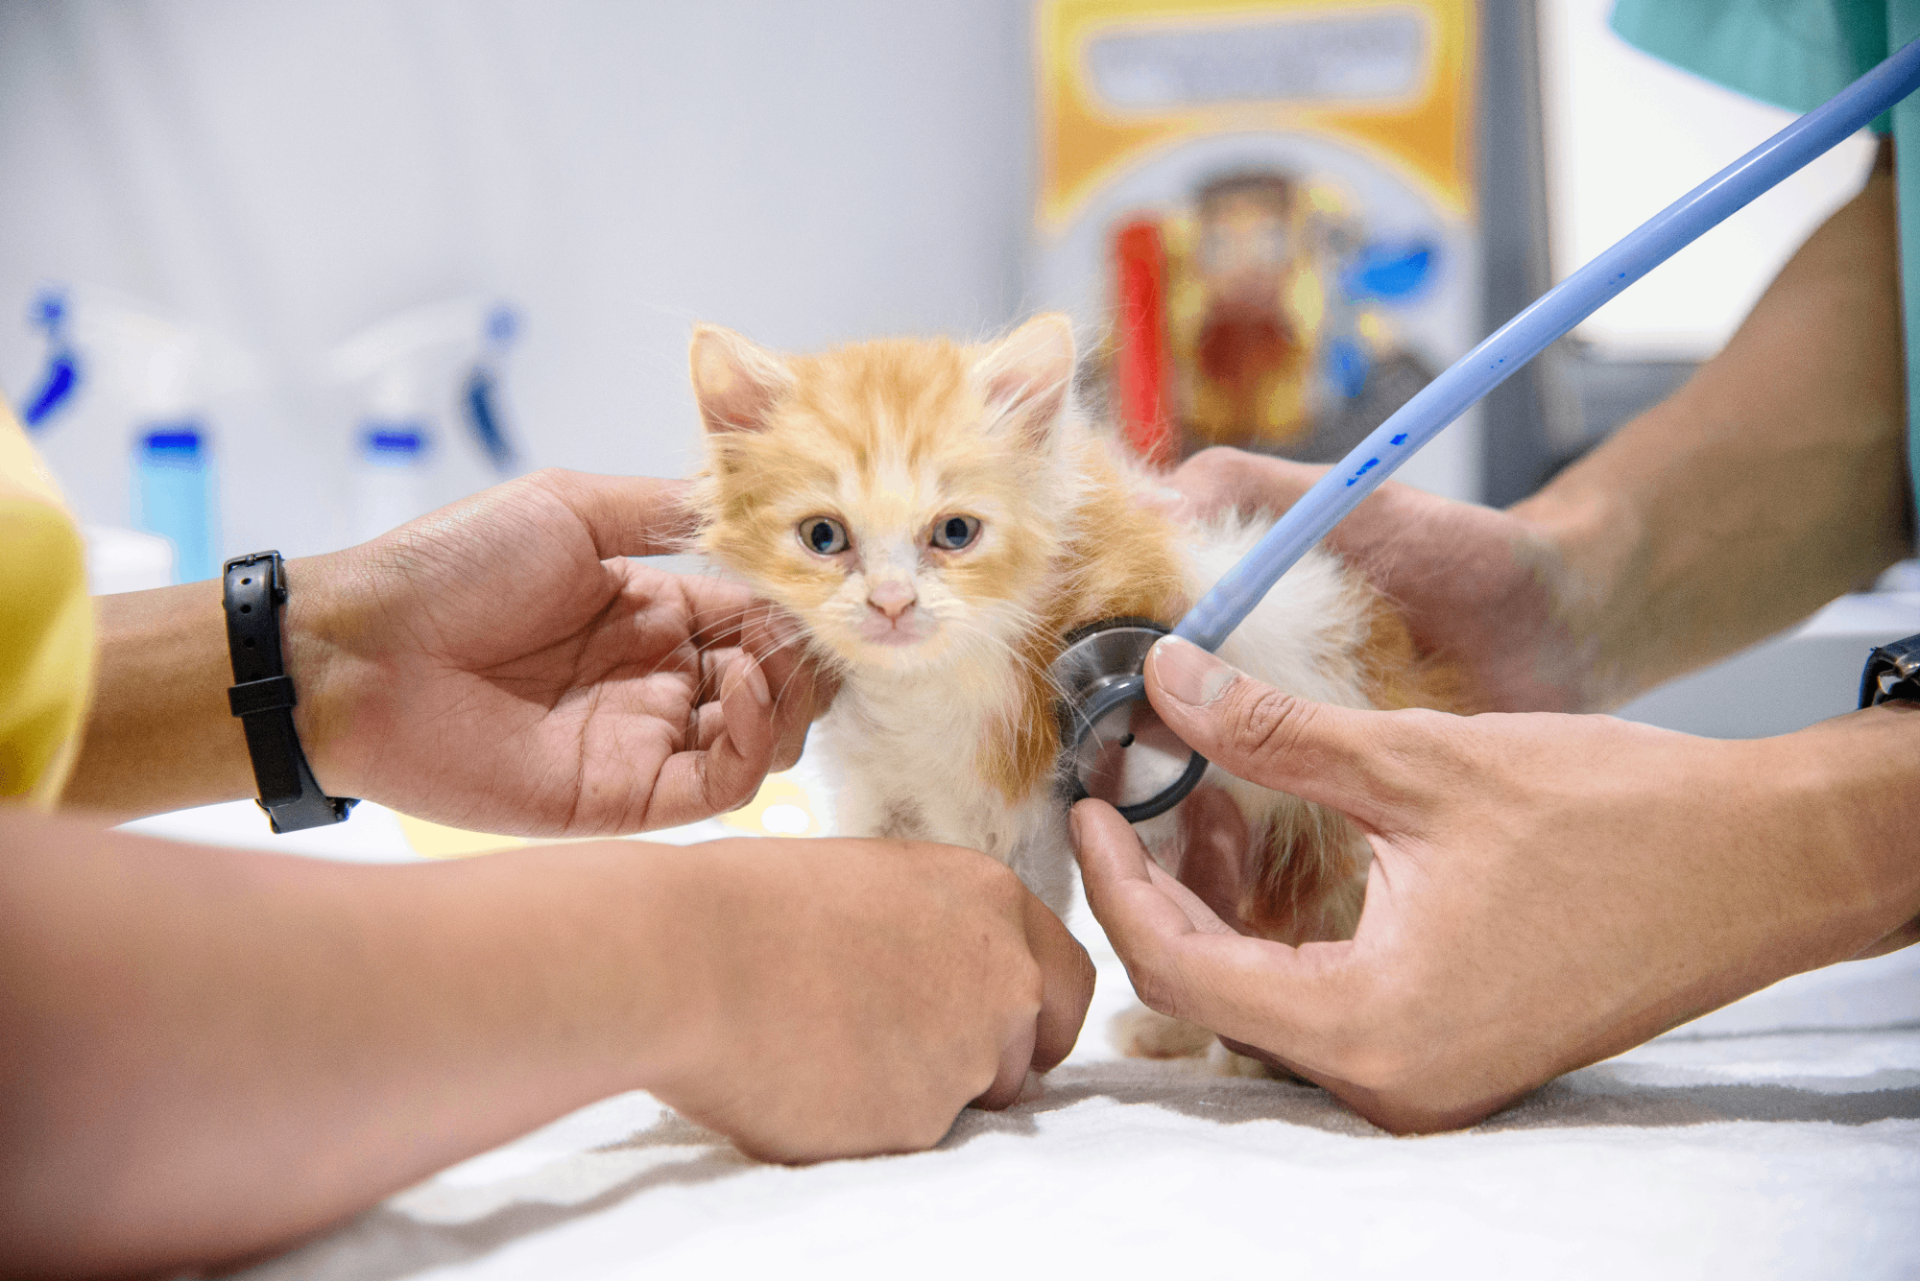 วัคซีนลิวคีเมียและเอดส์แมว